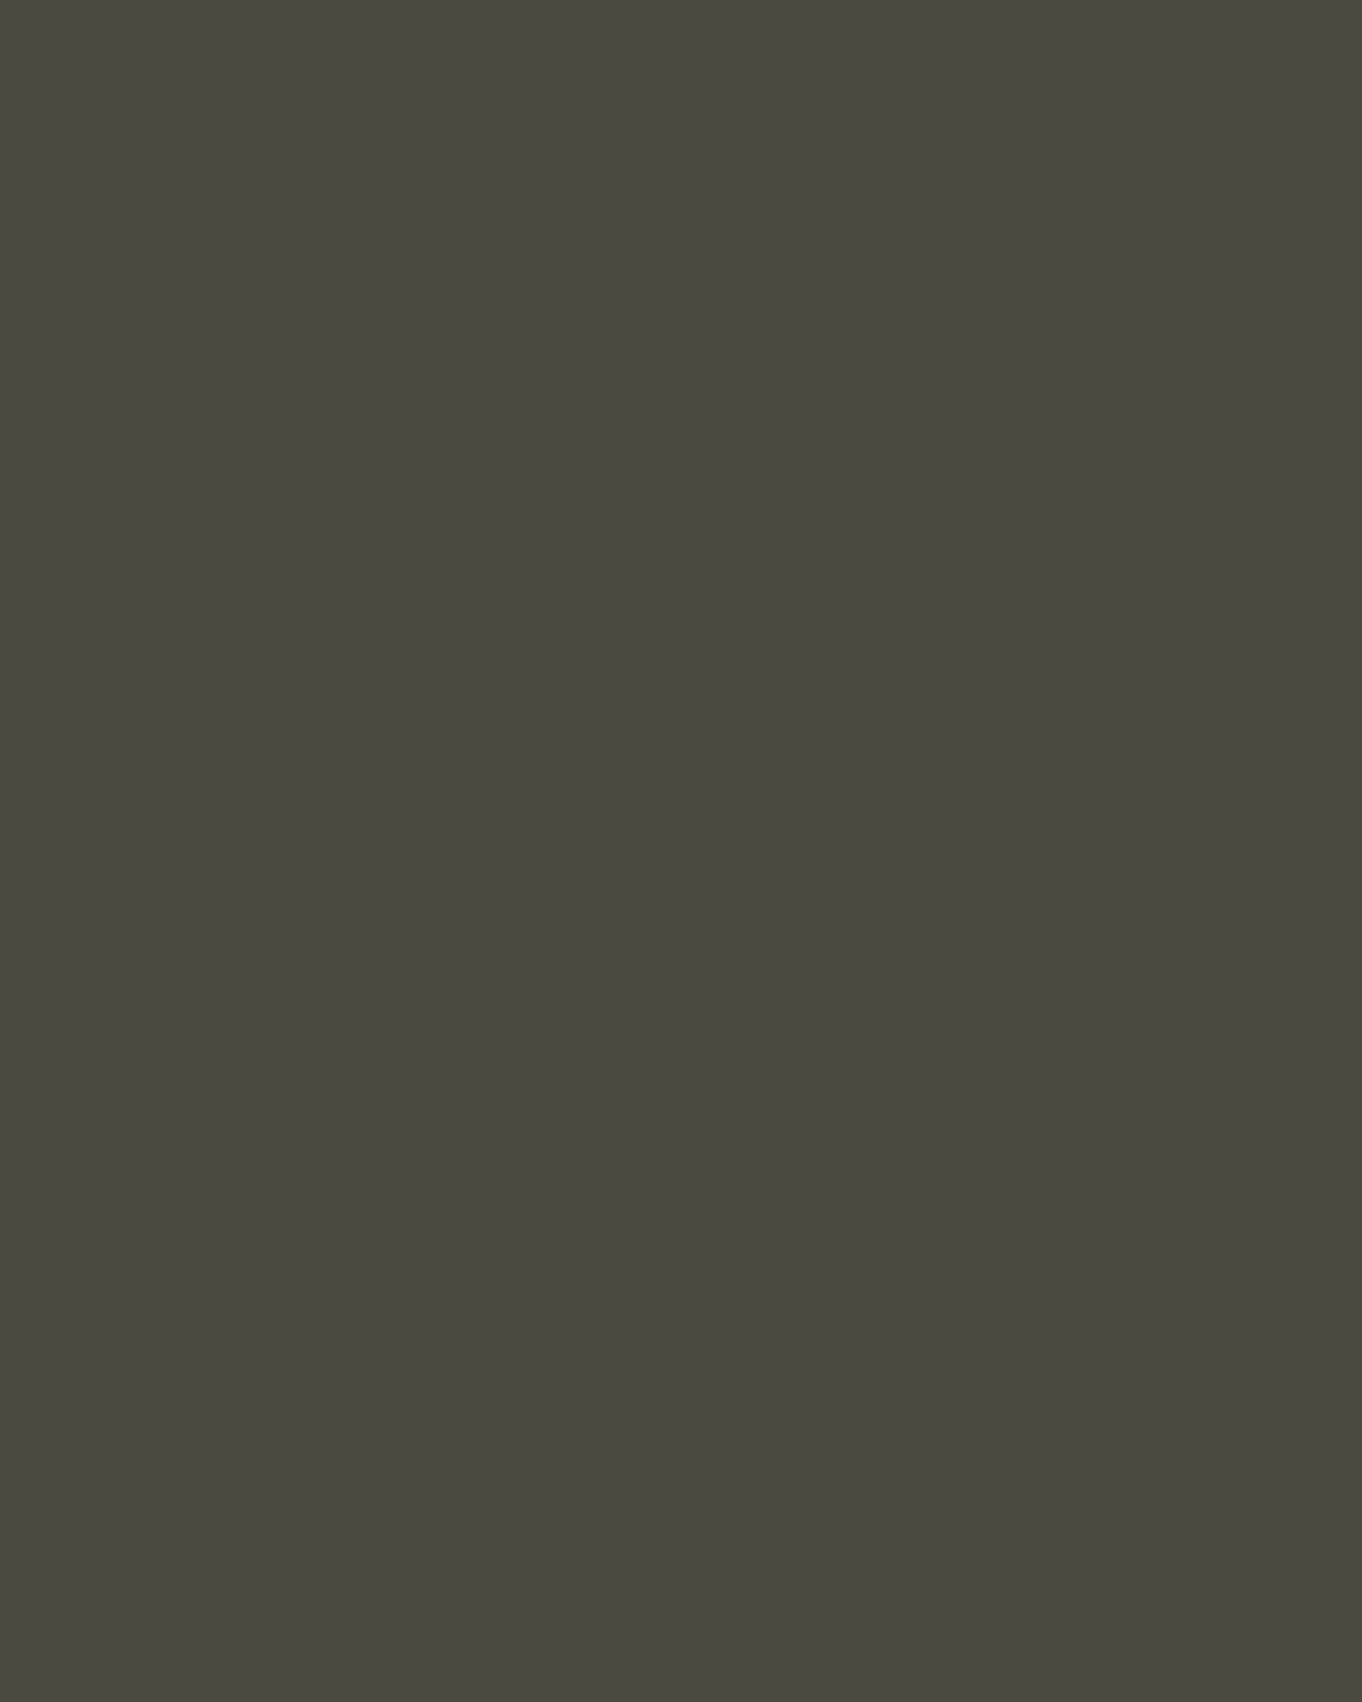 Николай Ярошенко. Девушки с письмом. 1892. Художественный музей имени Ц.С. Сампилова, Улан-Удэ